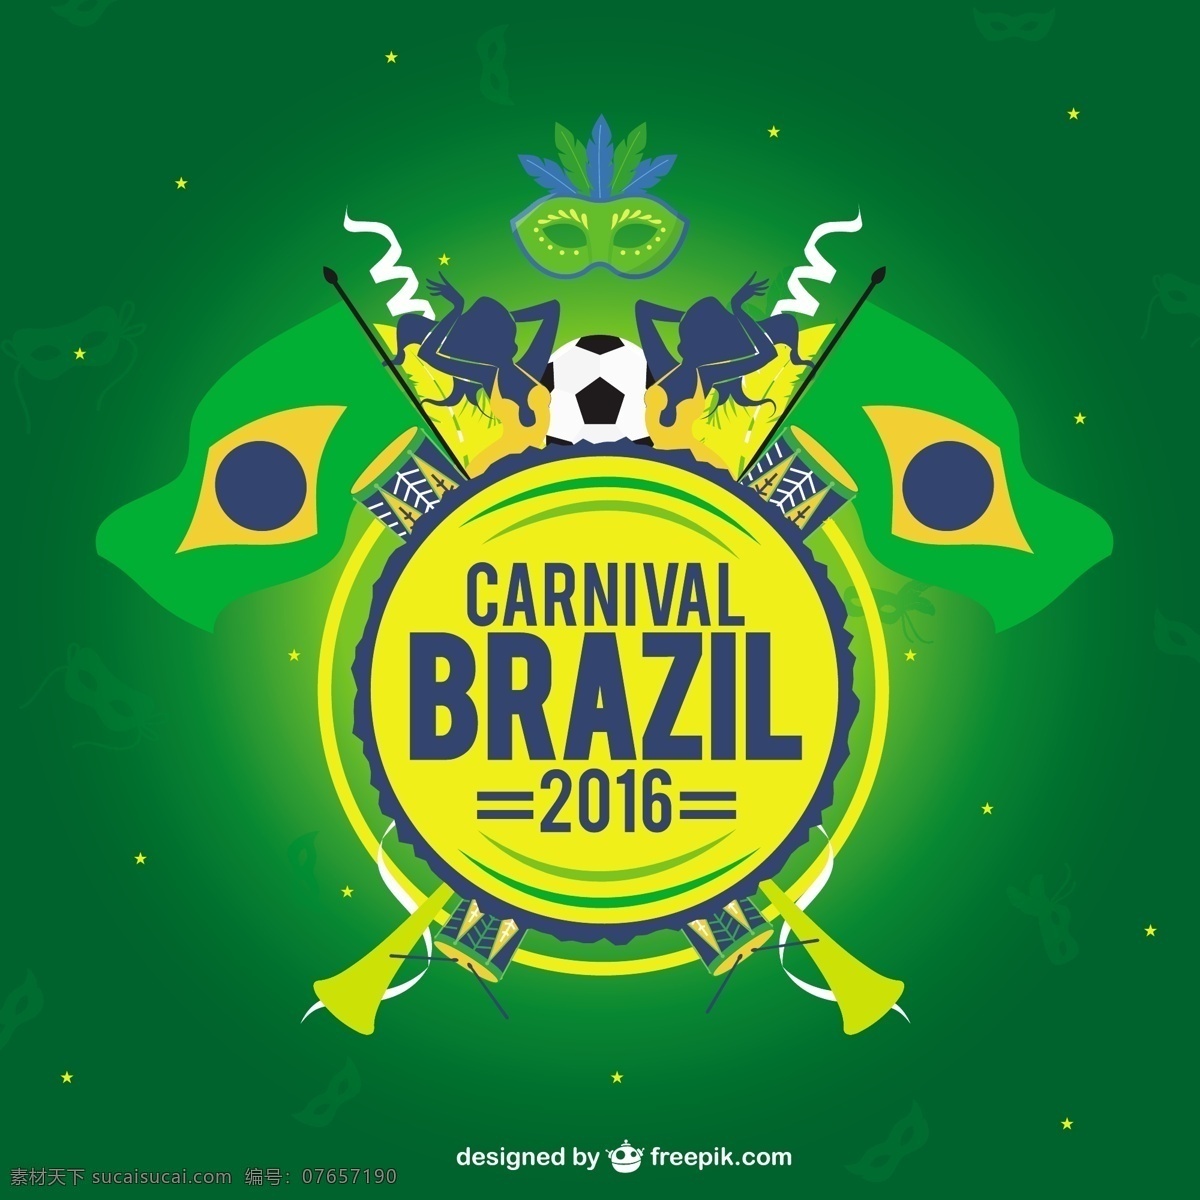 巴西 元素 设计素材 巴西元素 巴西国旗 国旗 面具 建筑 绿色